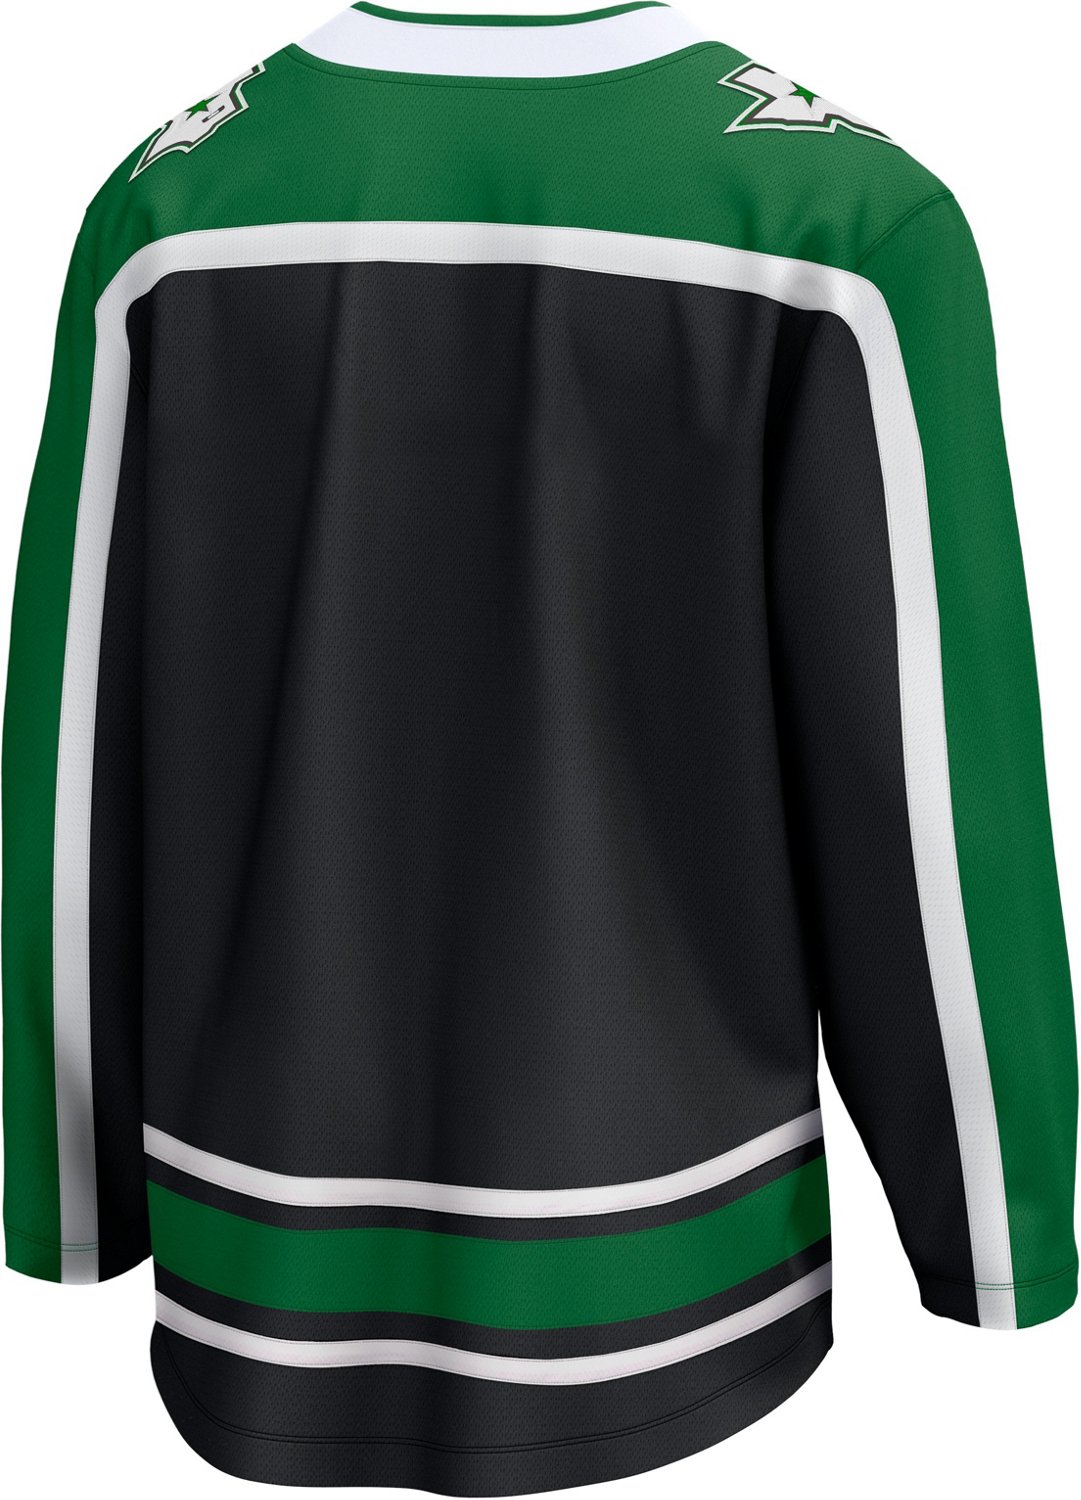 Dallas Stars Mens Green Vintage Breakaway Hockey Jersey